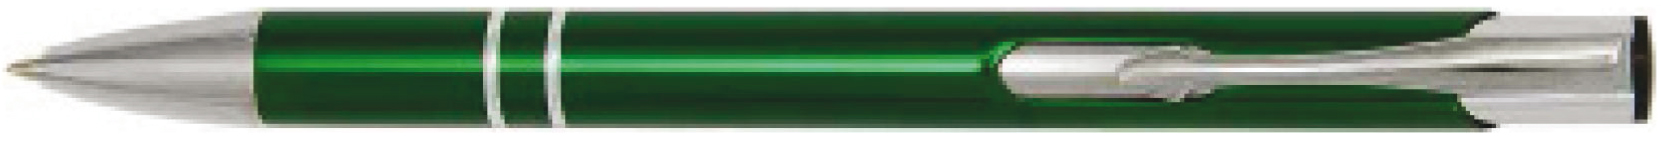 BestPen - penna promozionale in metallo con incisione C-12